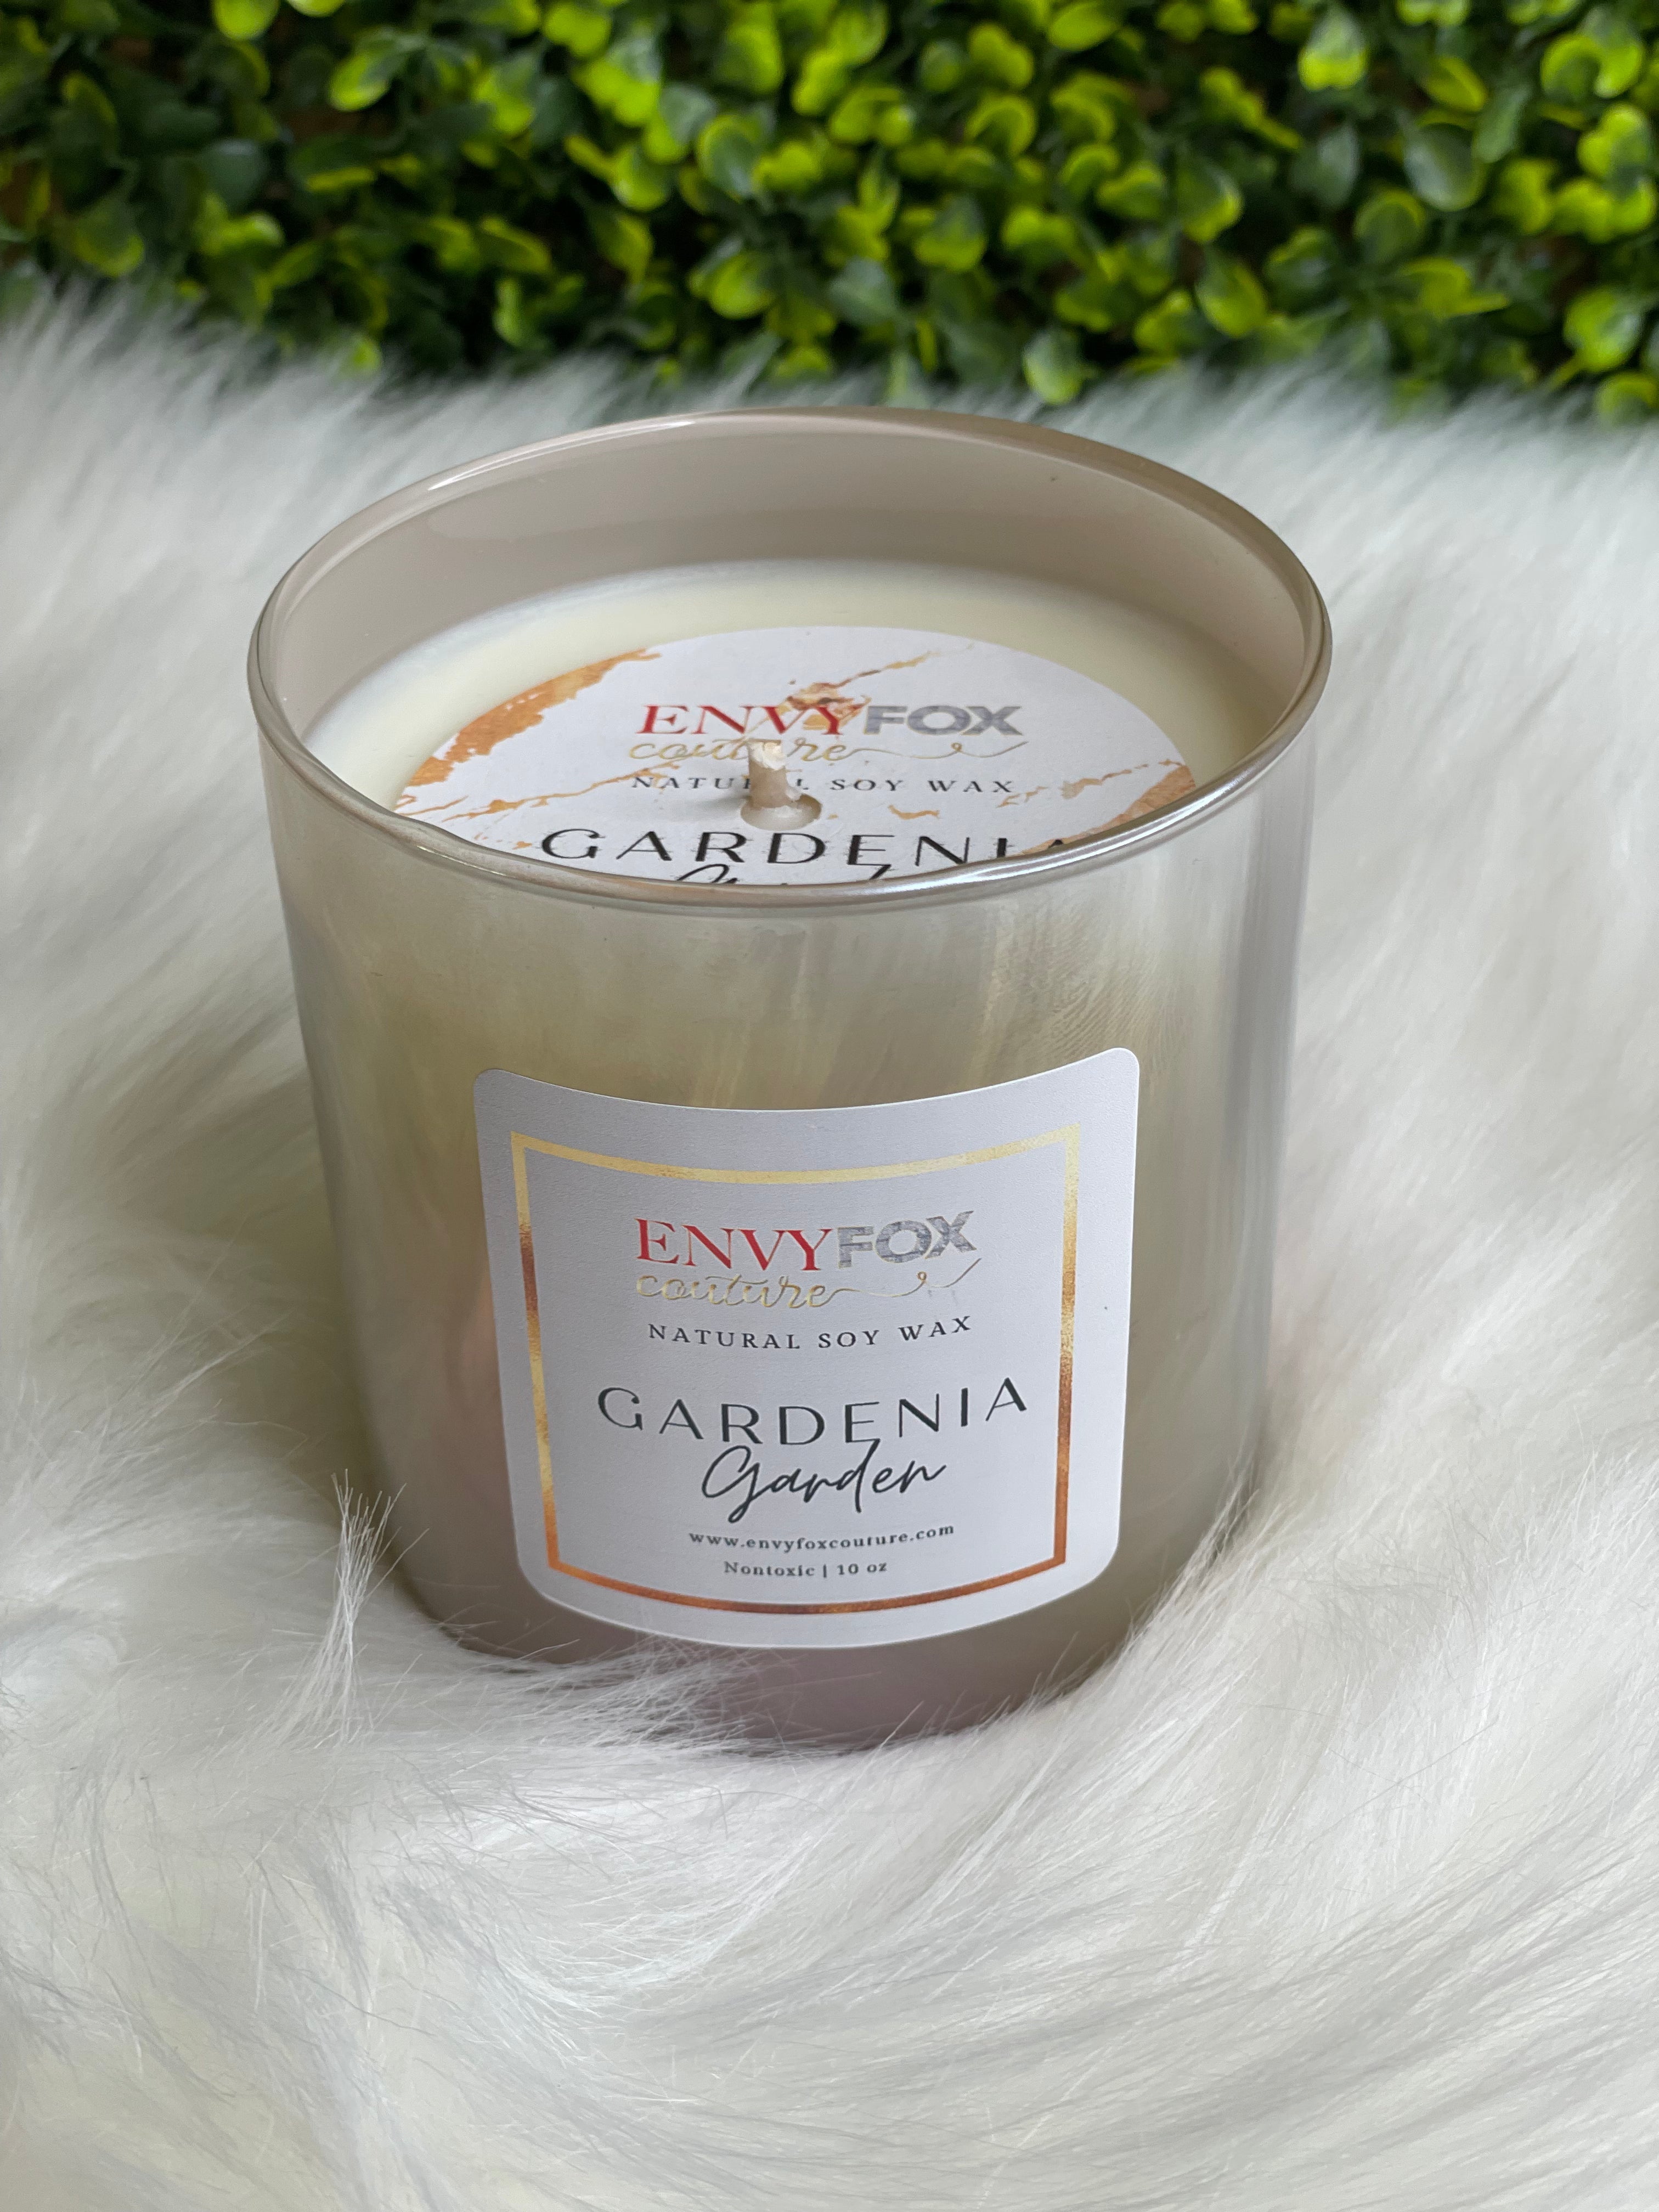 Gardenia Garden 10 oz Natural Soy Wax Candle